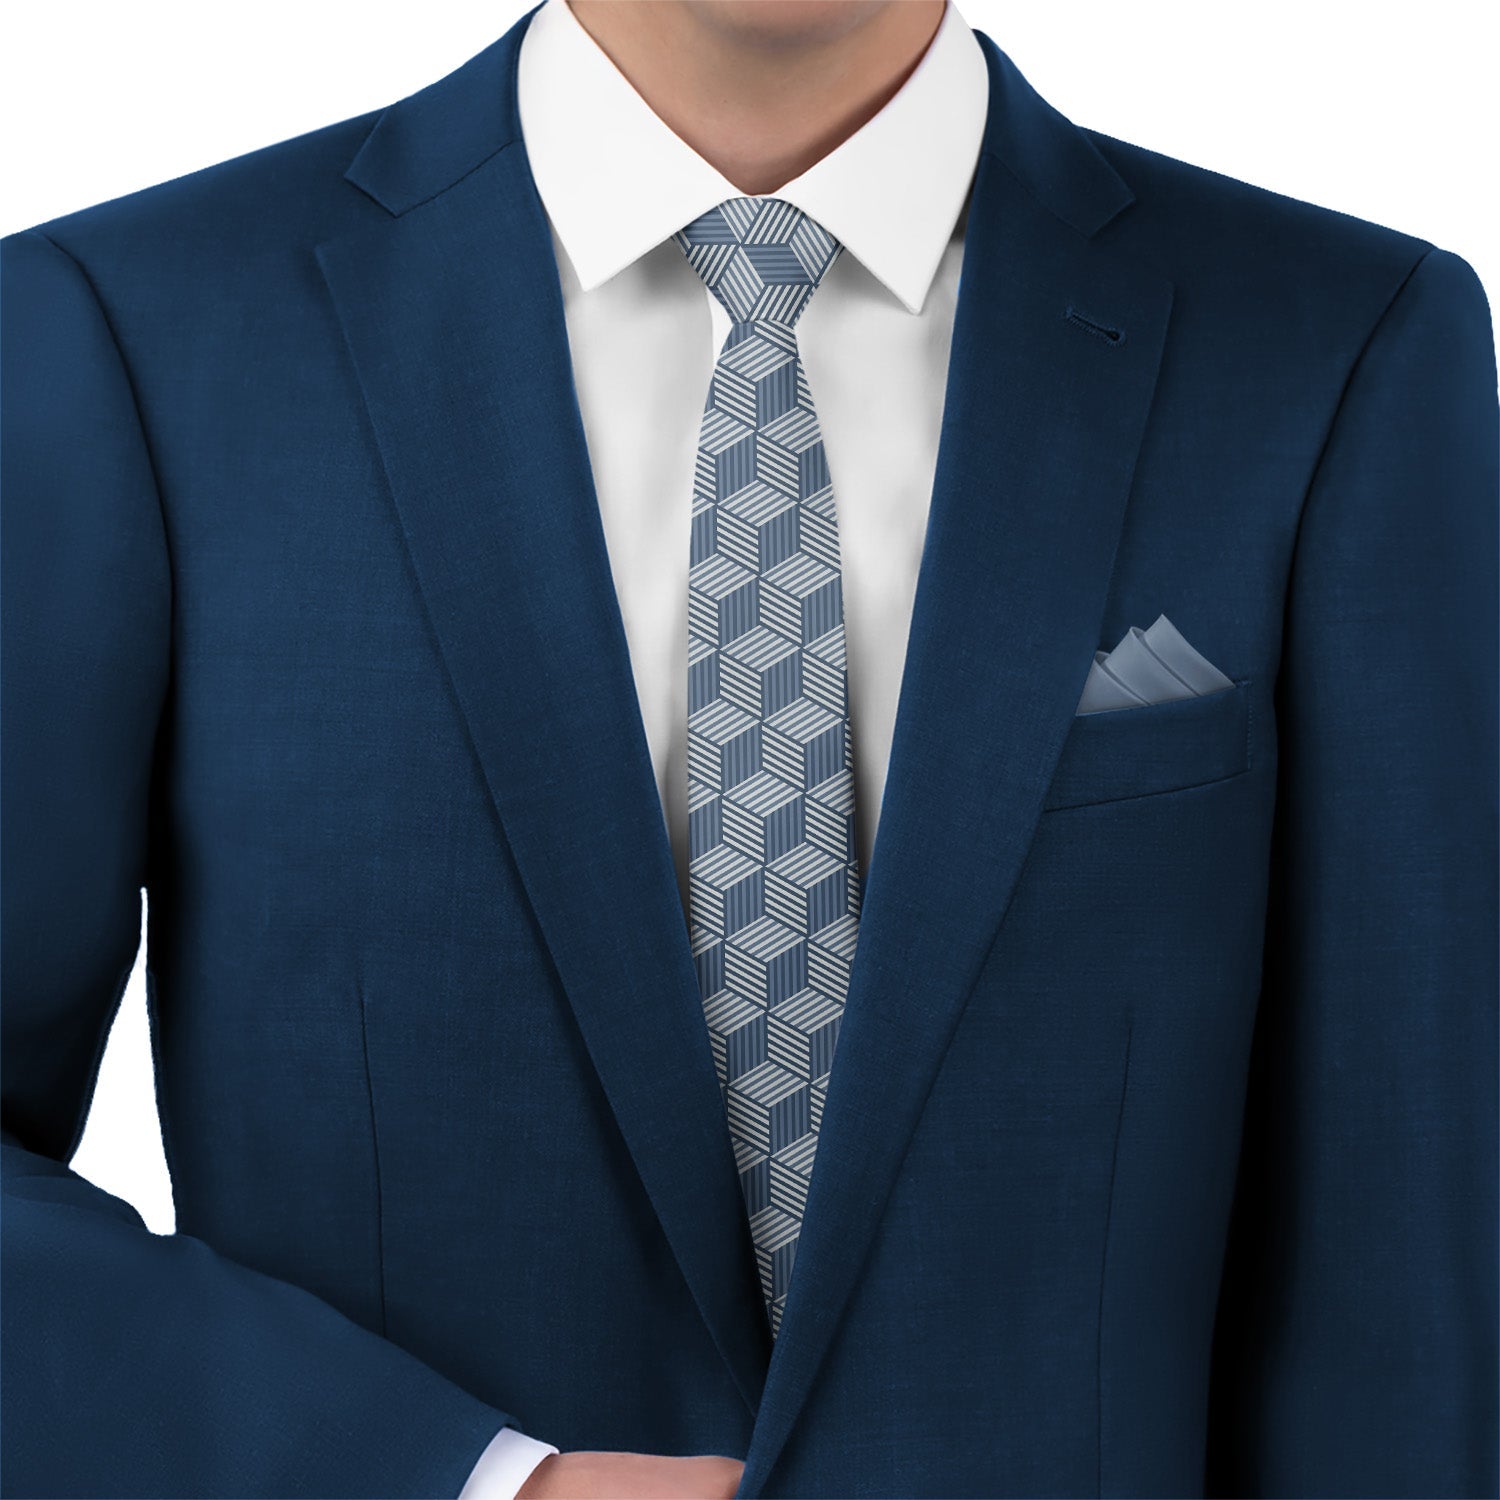 Hexagon Wild Necktie -  -  - Knotty Tie Co.